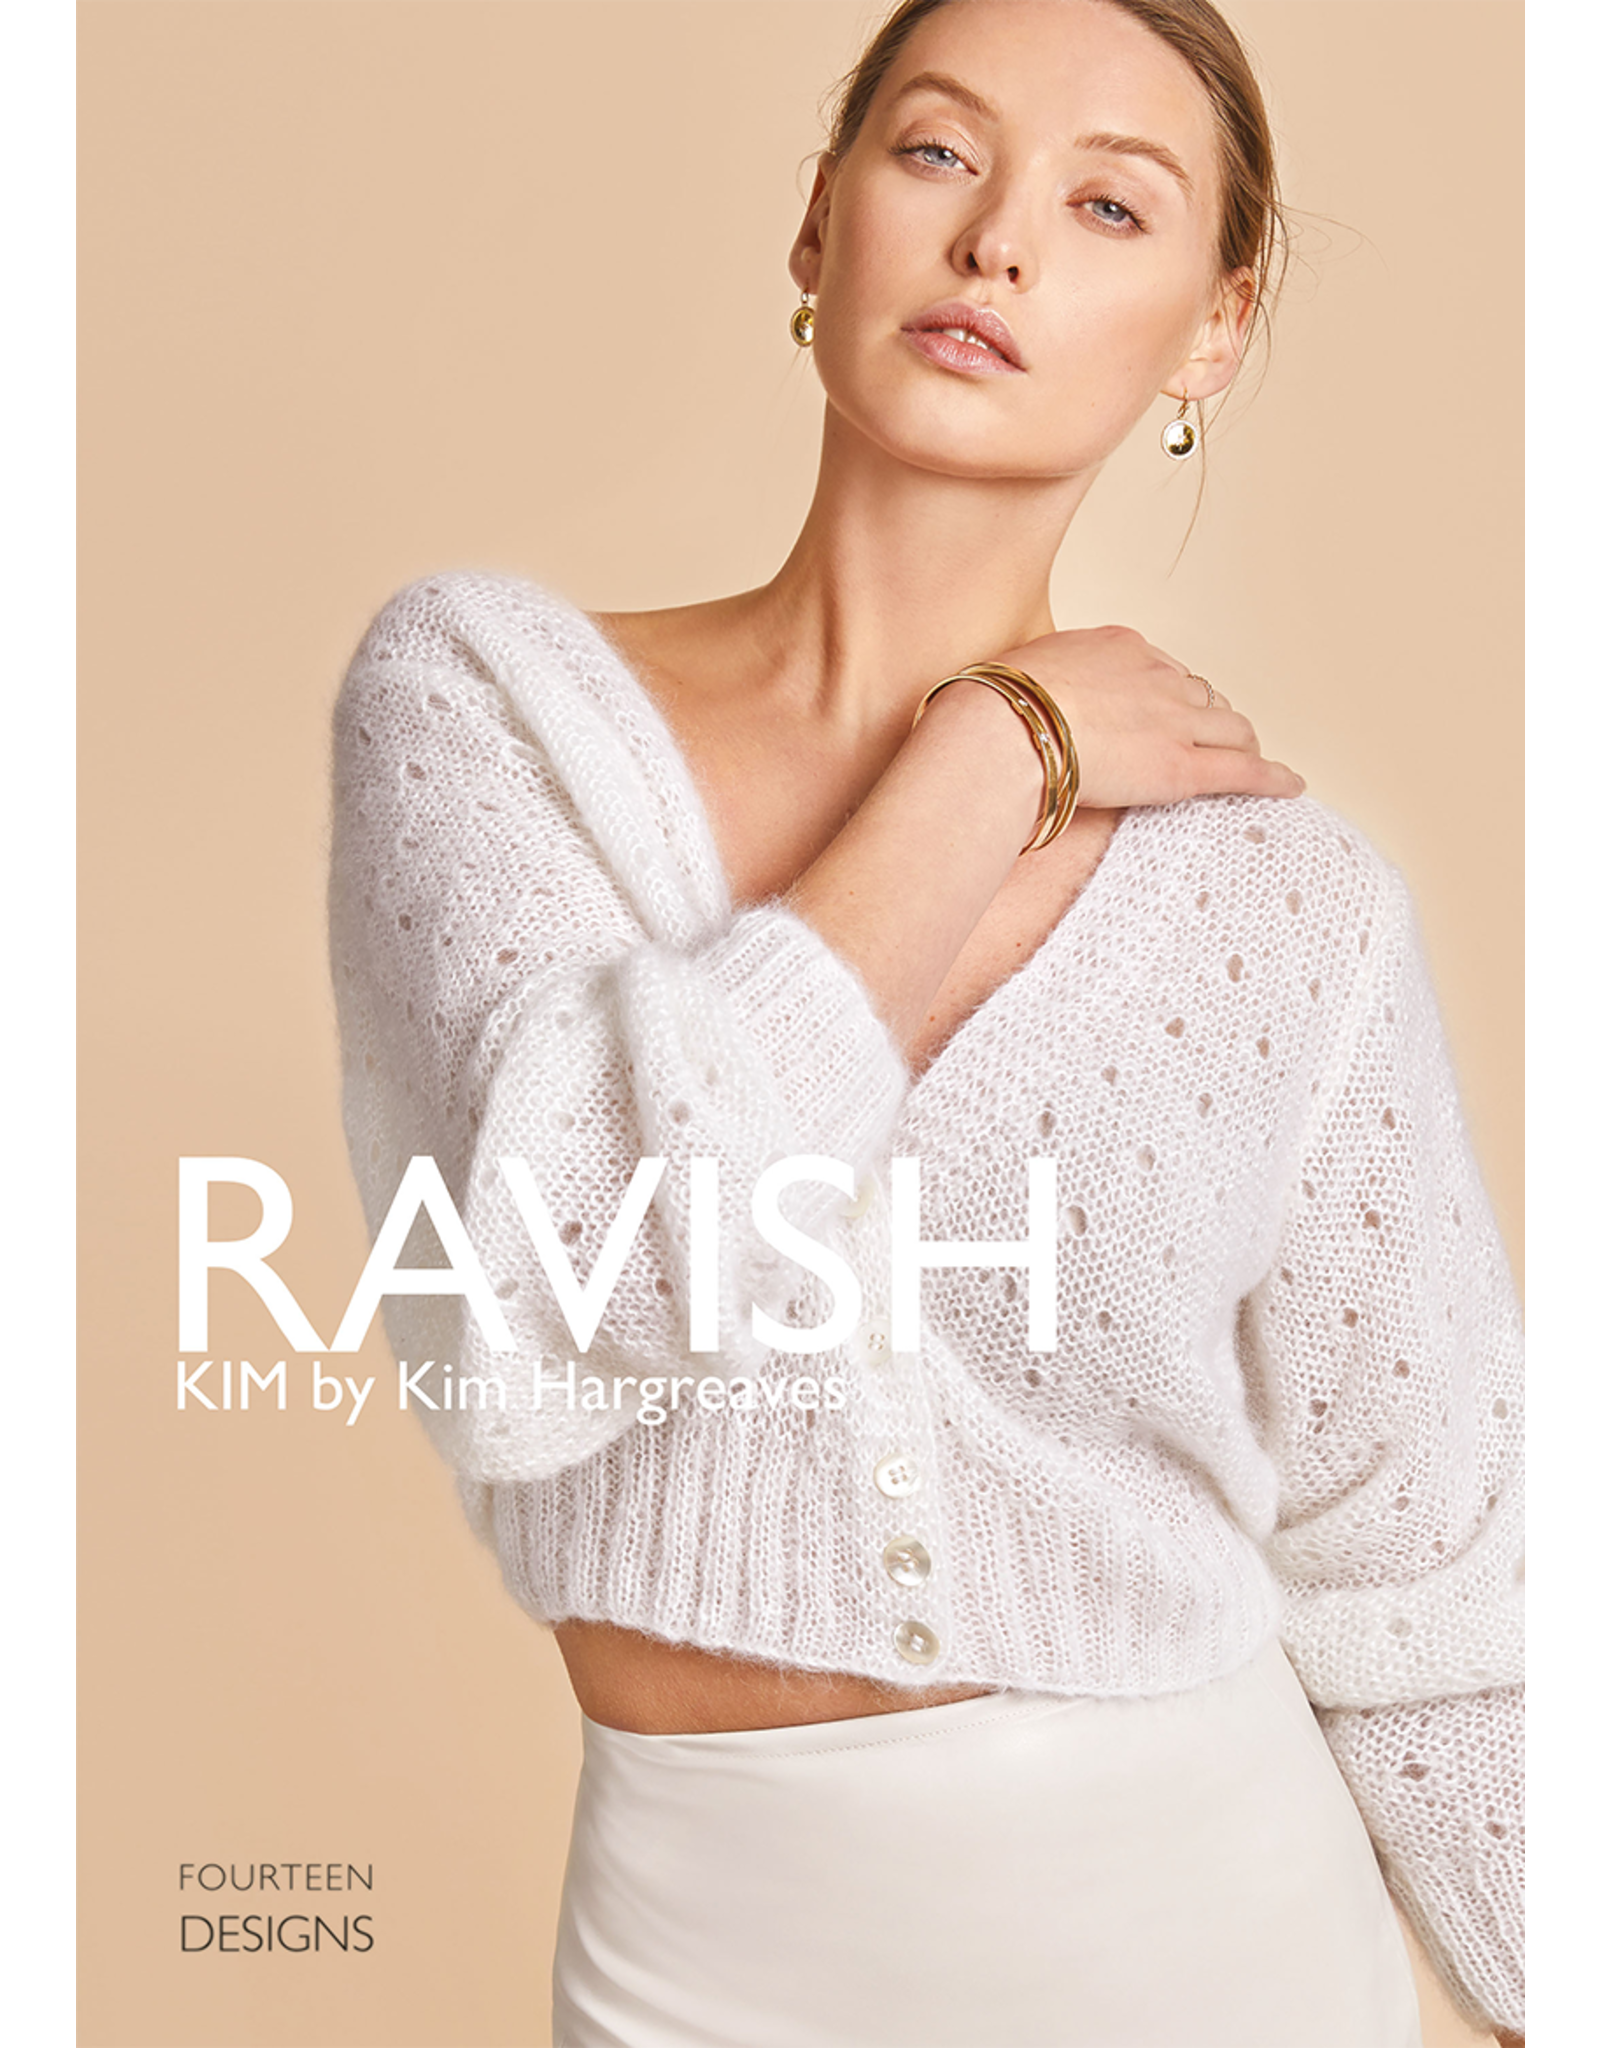 Ravish no 10 Kim by Kim Hargreaves